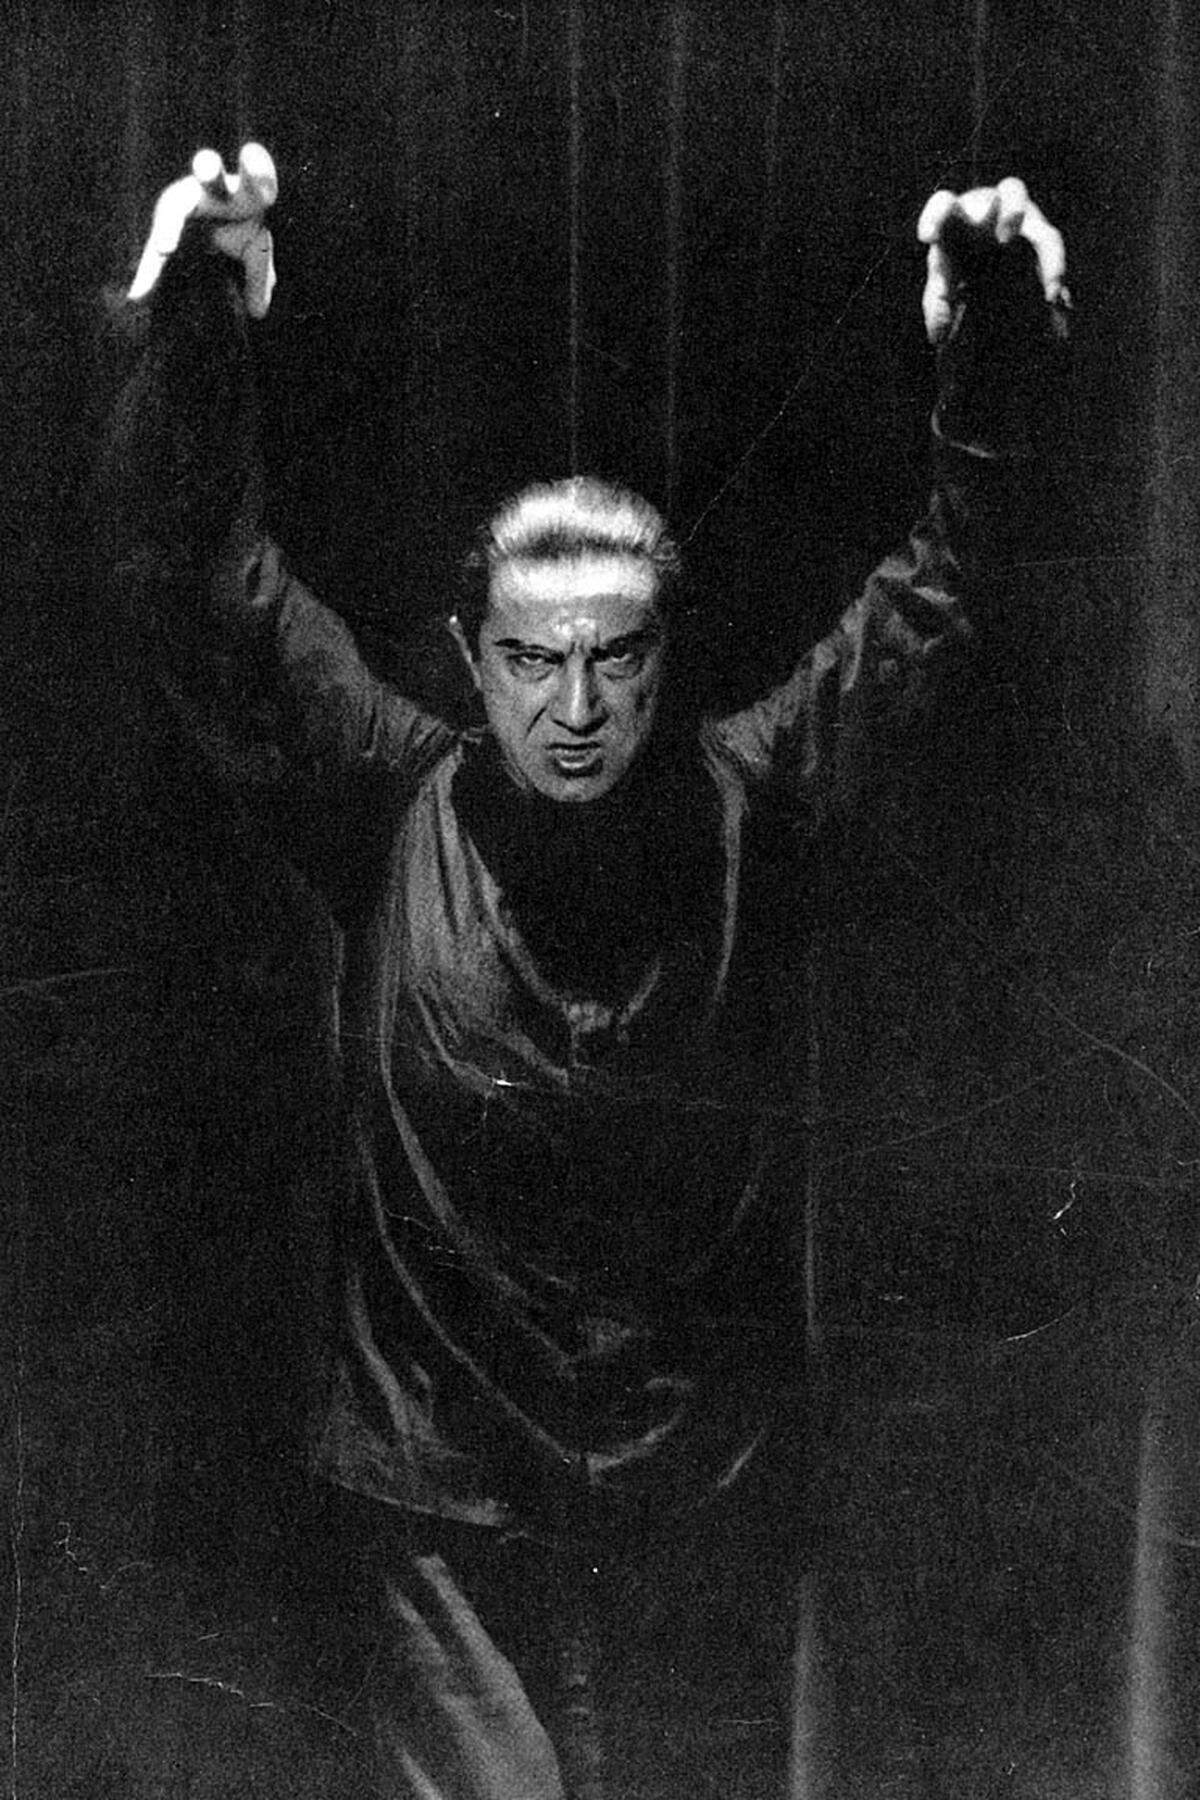 Zum legendären Untoten wurde auch Bela Lugosi. Praktisch jedes Jahrzehnt hatte "seinen" Vampir. Einen grundlegenden Wandel vollzogen die Untoten aber erst in den Neunzigern.